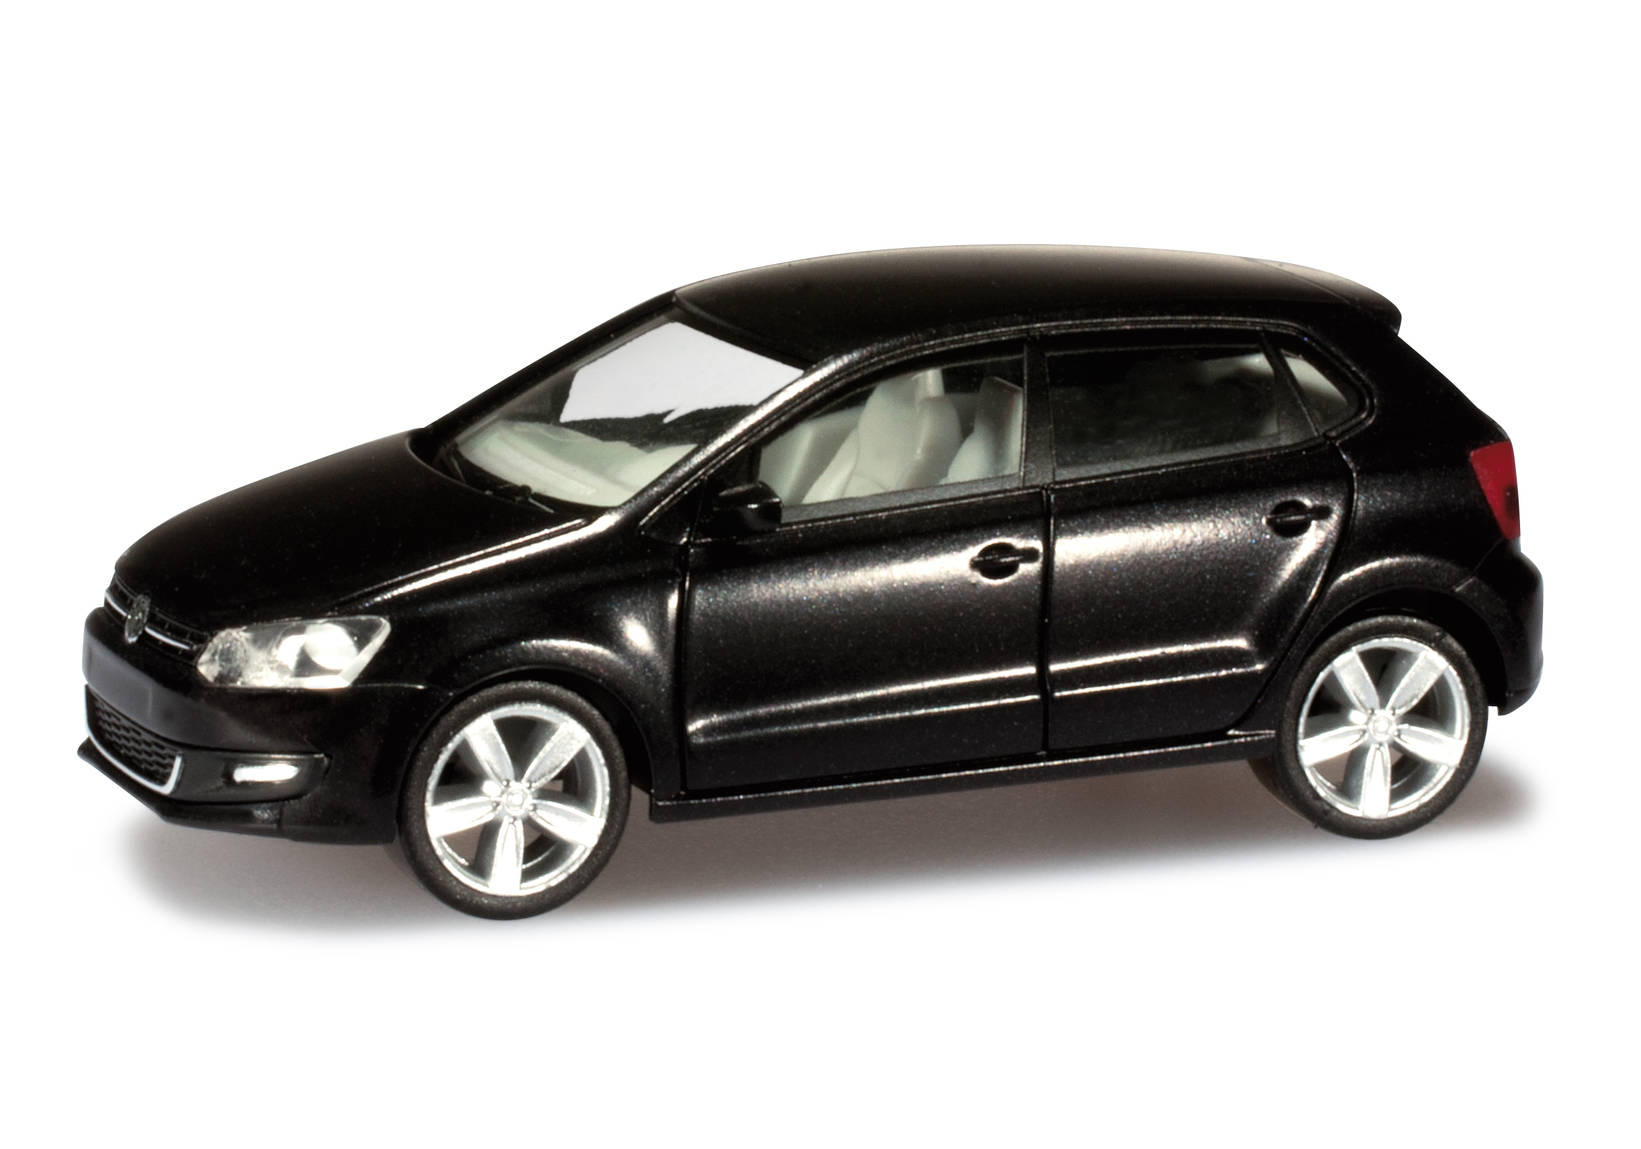 VW Polo 4 doors, deep black metallic